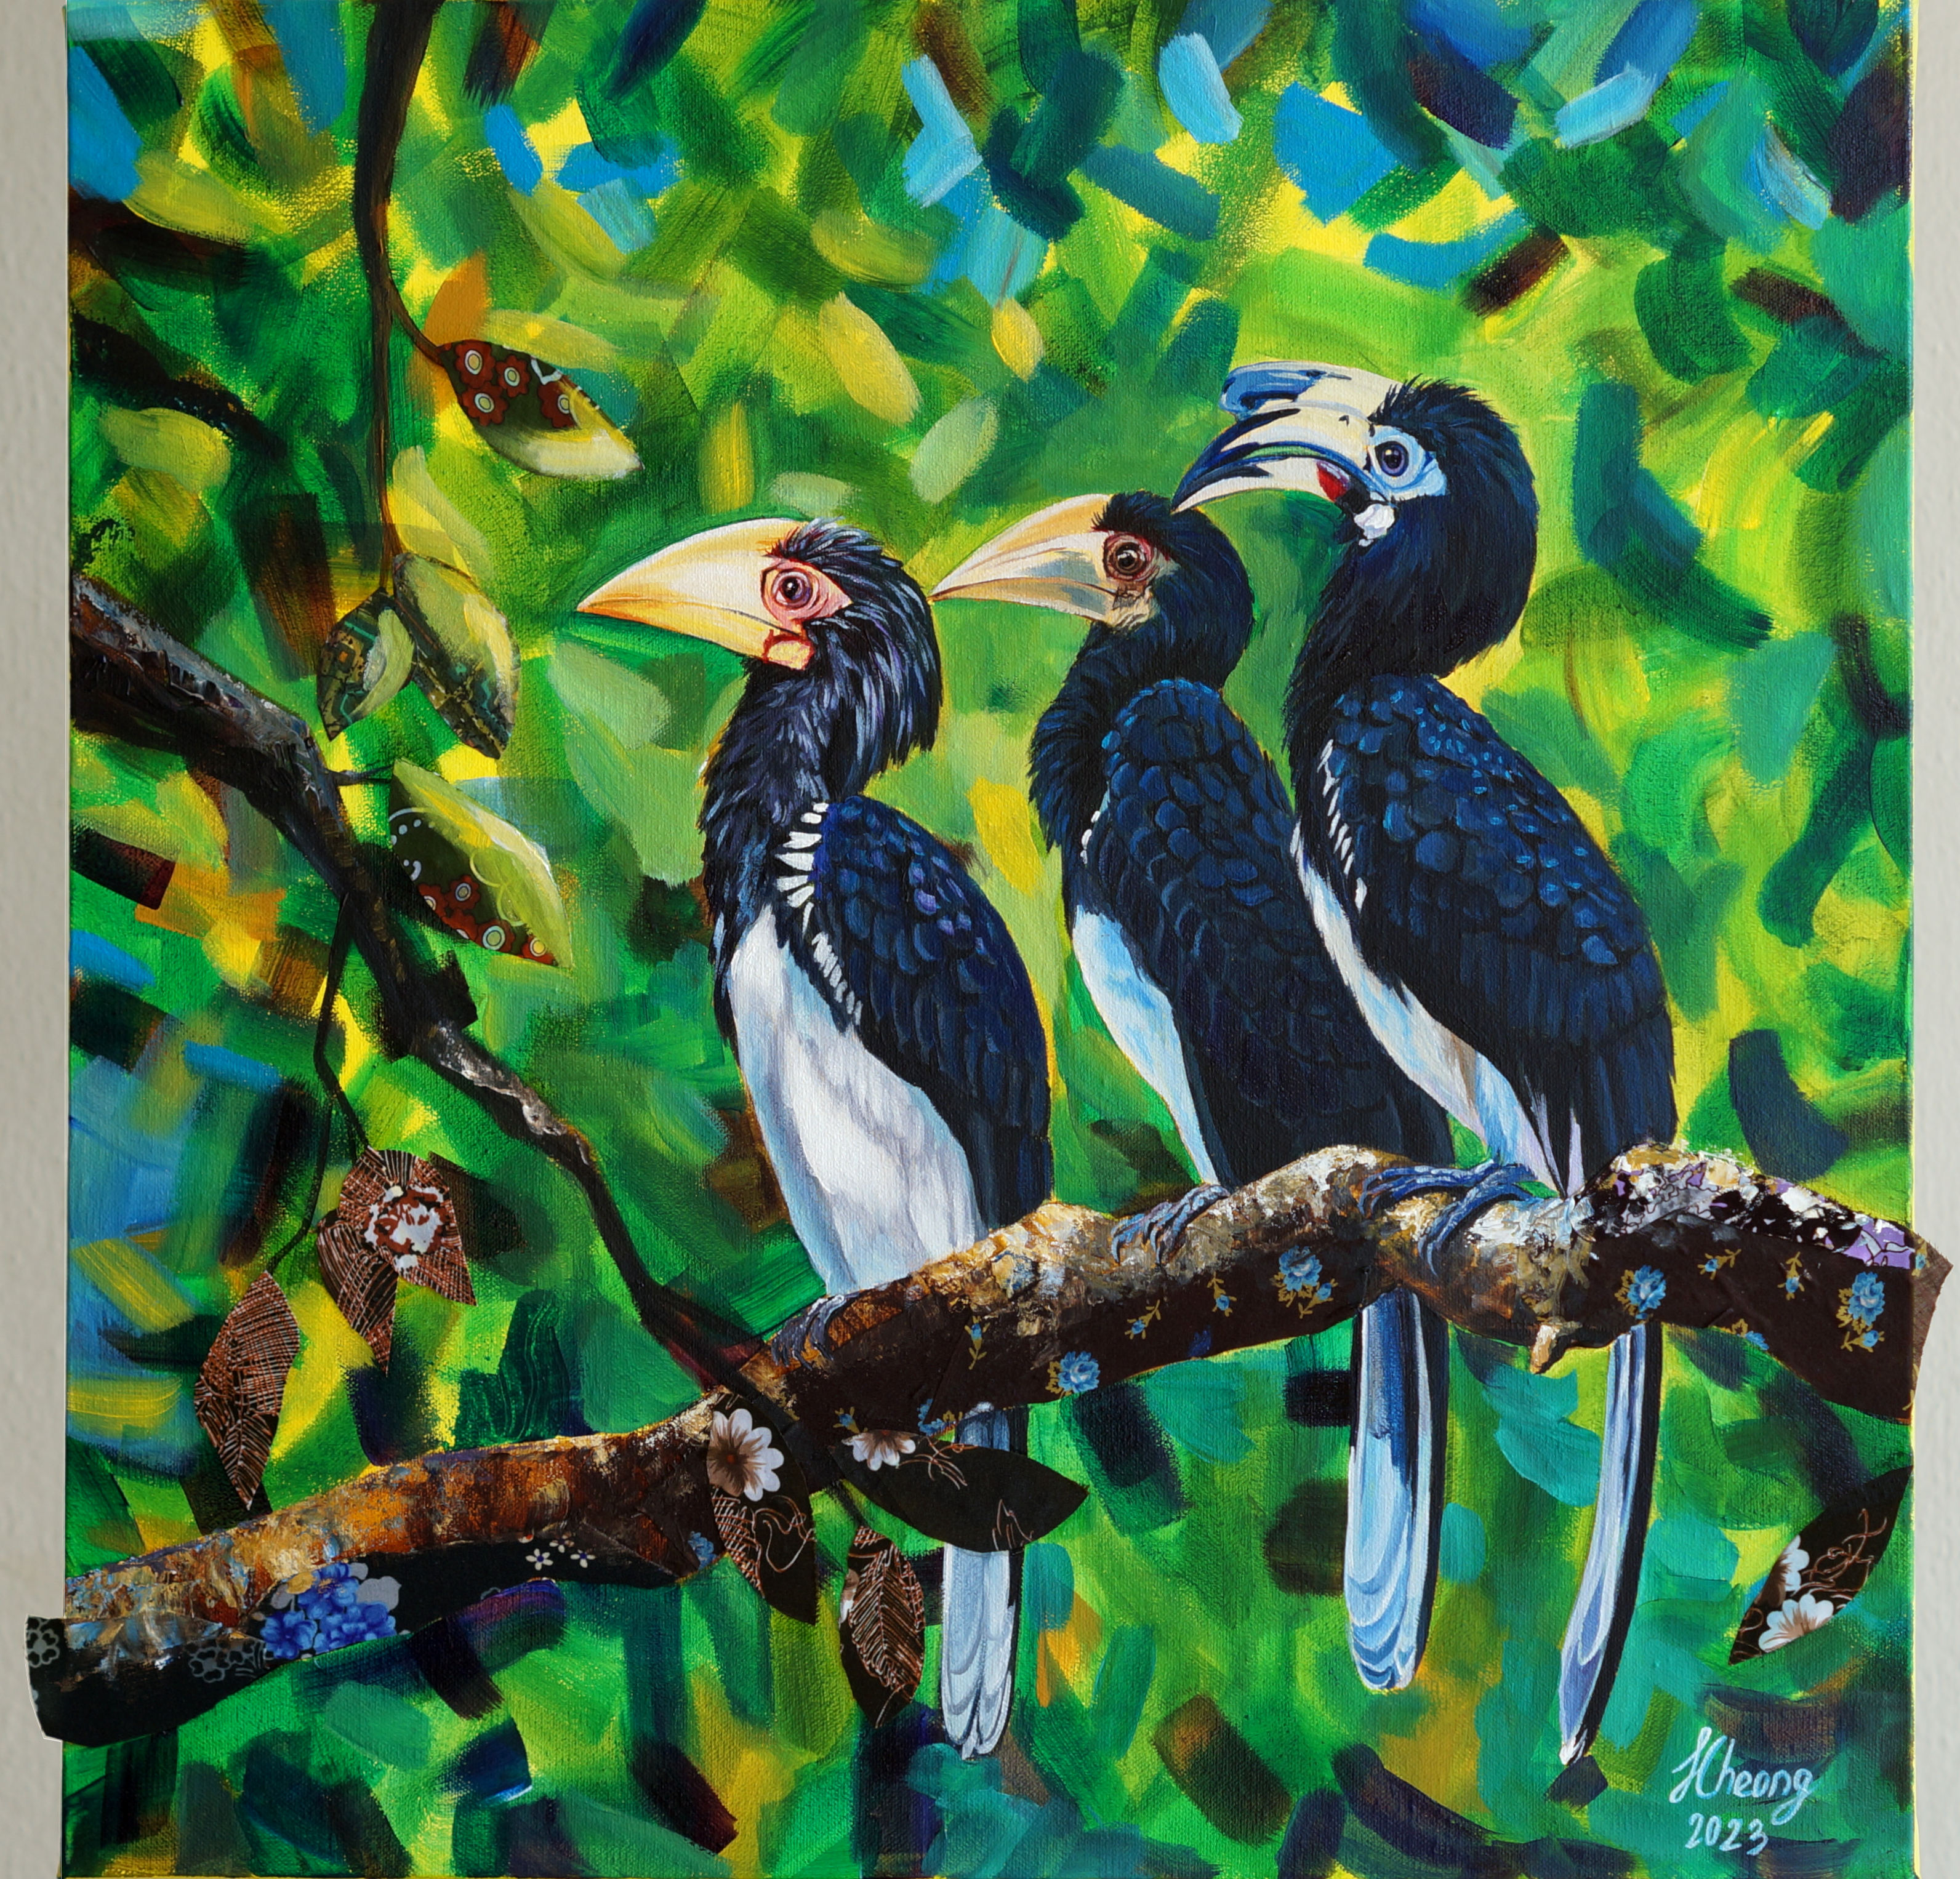 hornbill, bird, Three Hornbills, Mixed media, painting, Jillian Cheong